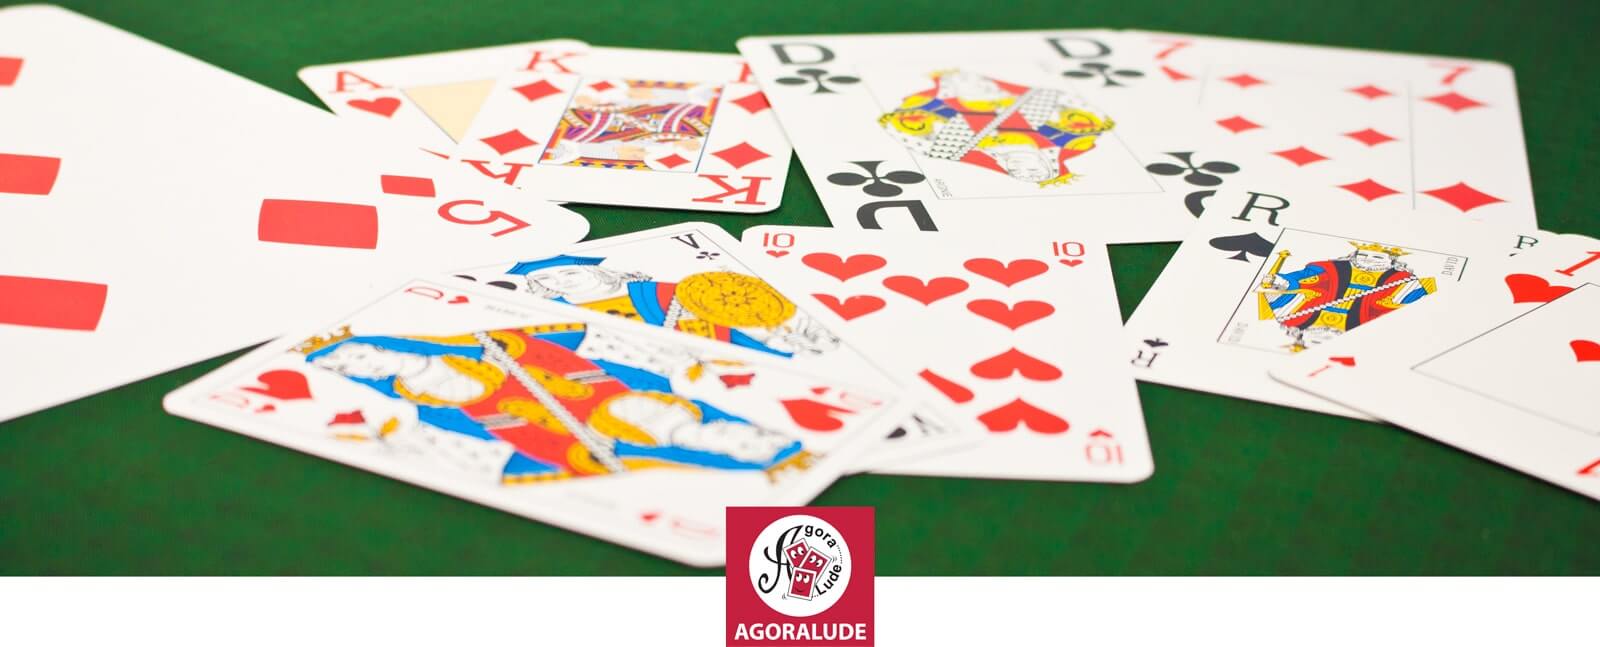 Pack Joueur de Tarot : Tapis + cartes + jetons